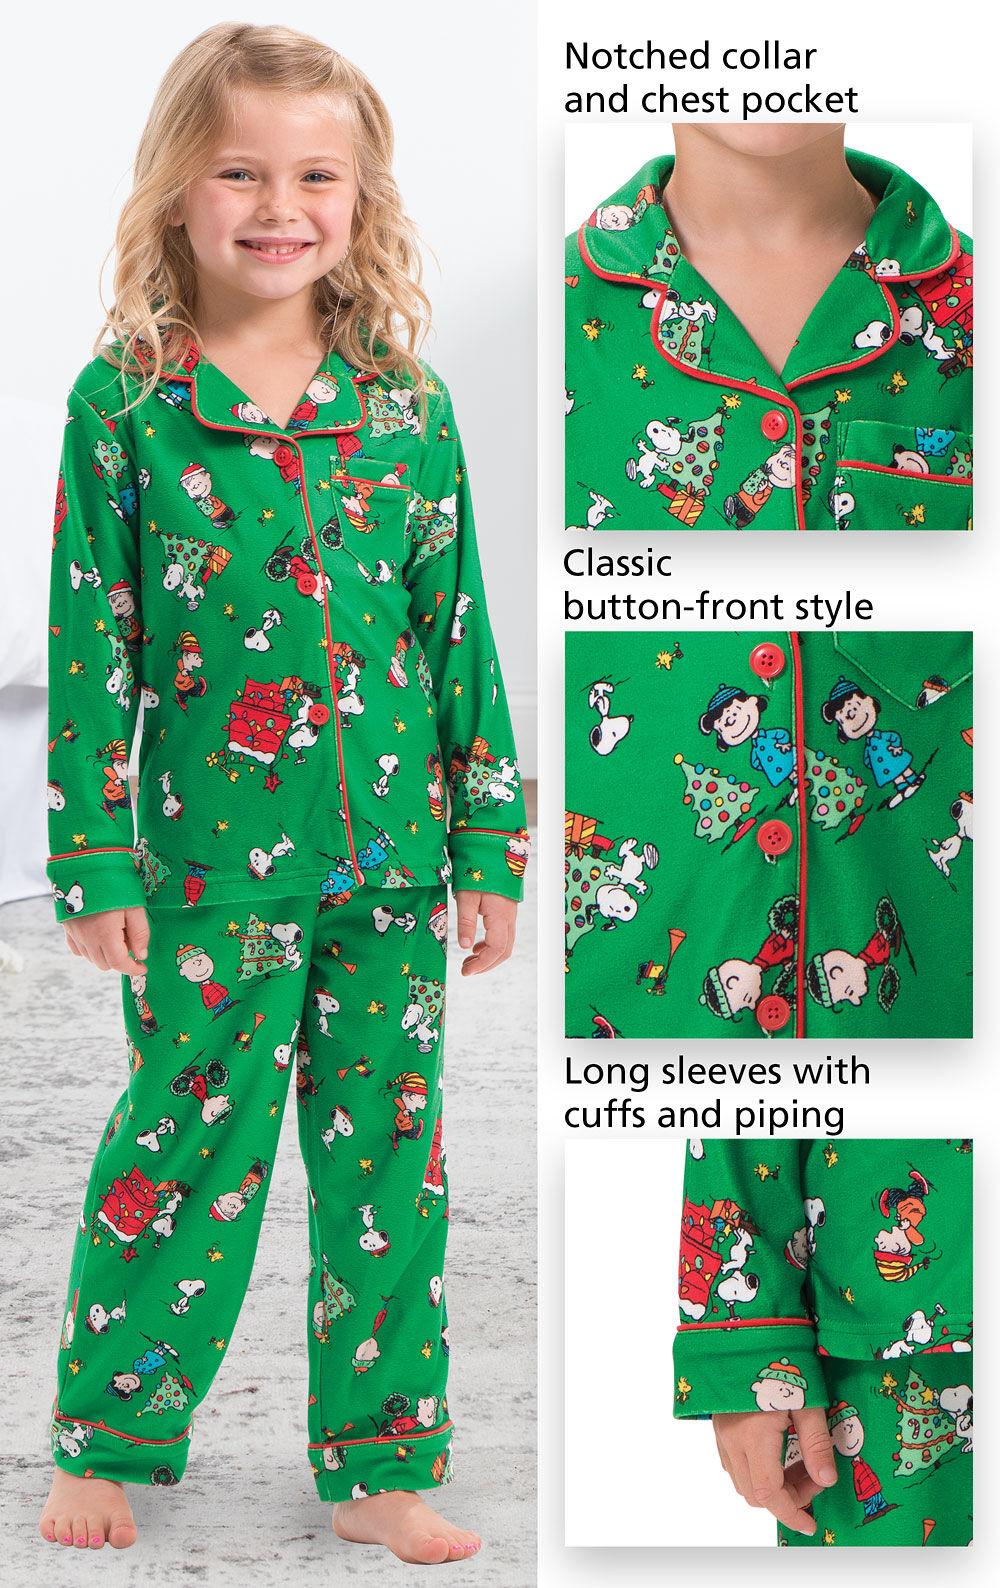 PajamaGram Unisex Toddler Christmas Pajamas Green Charlie Brown Christmas